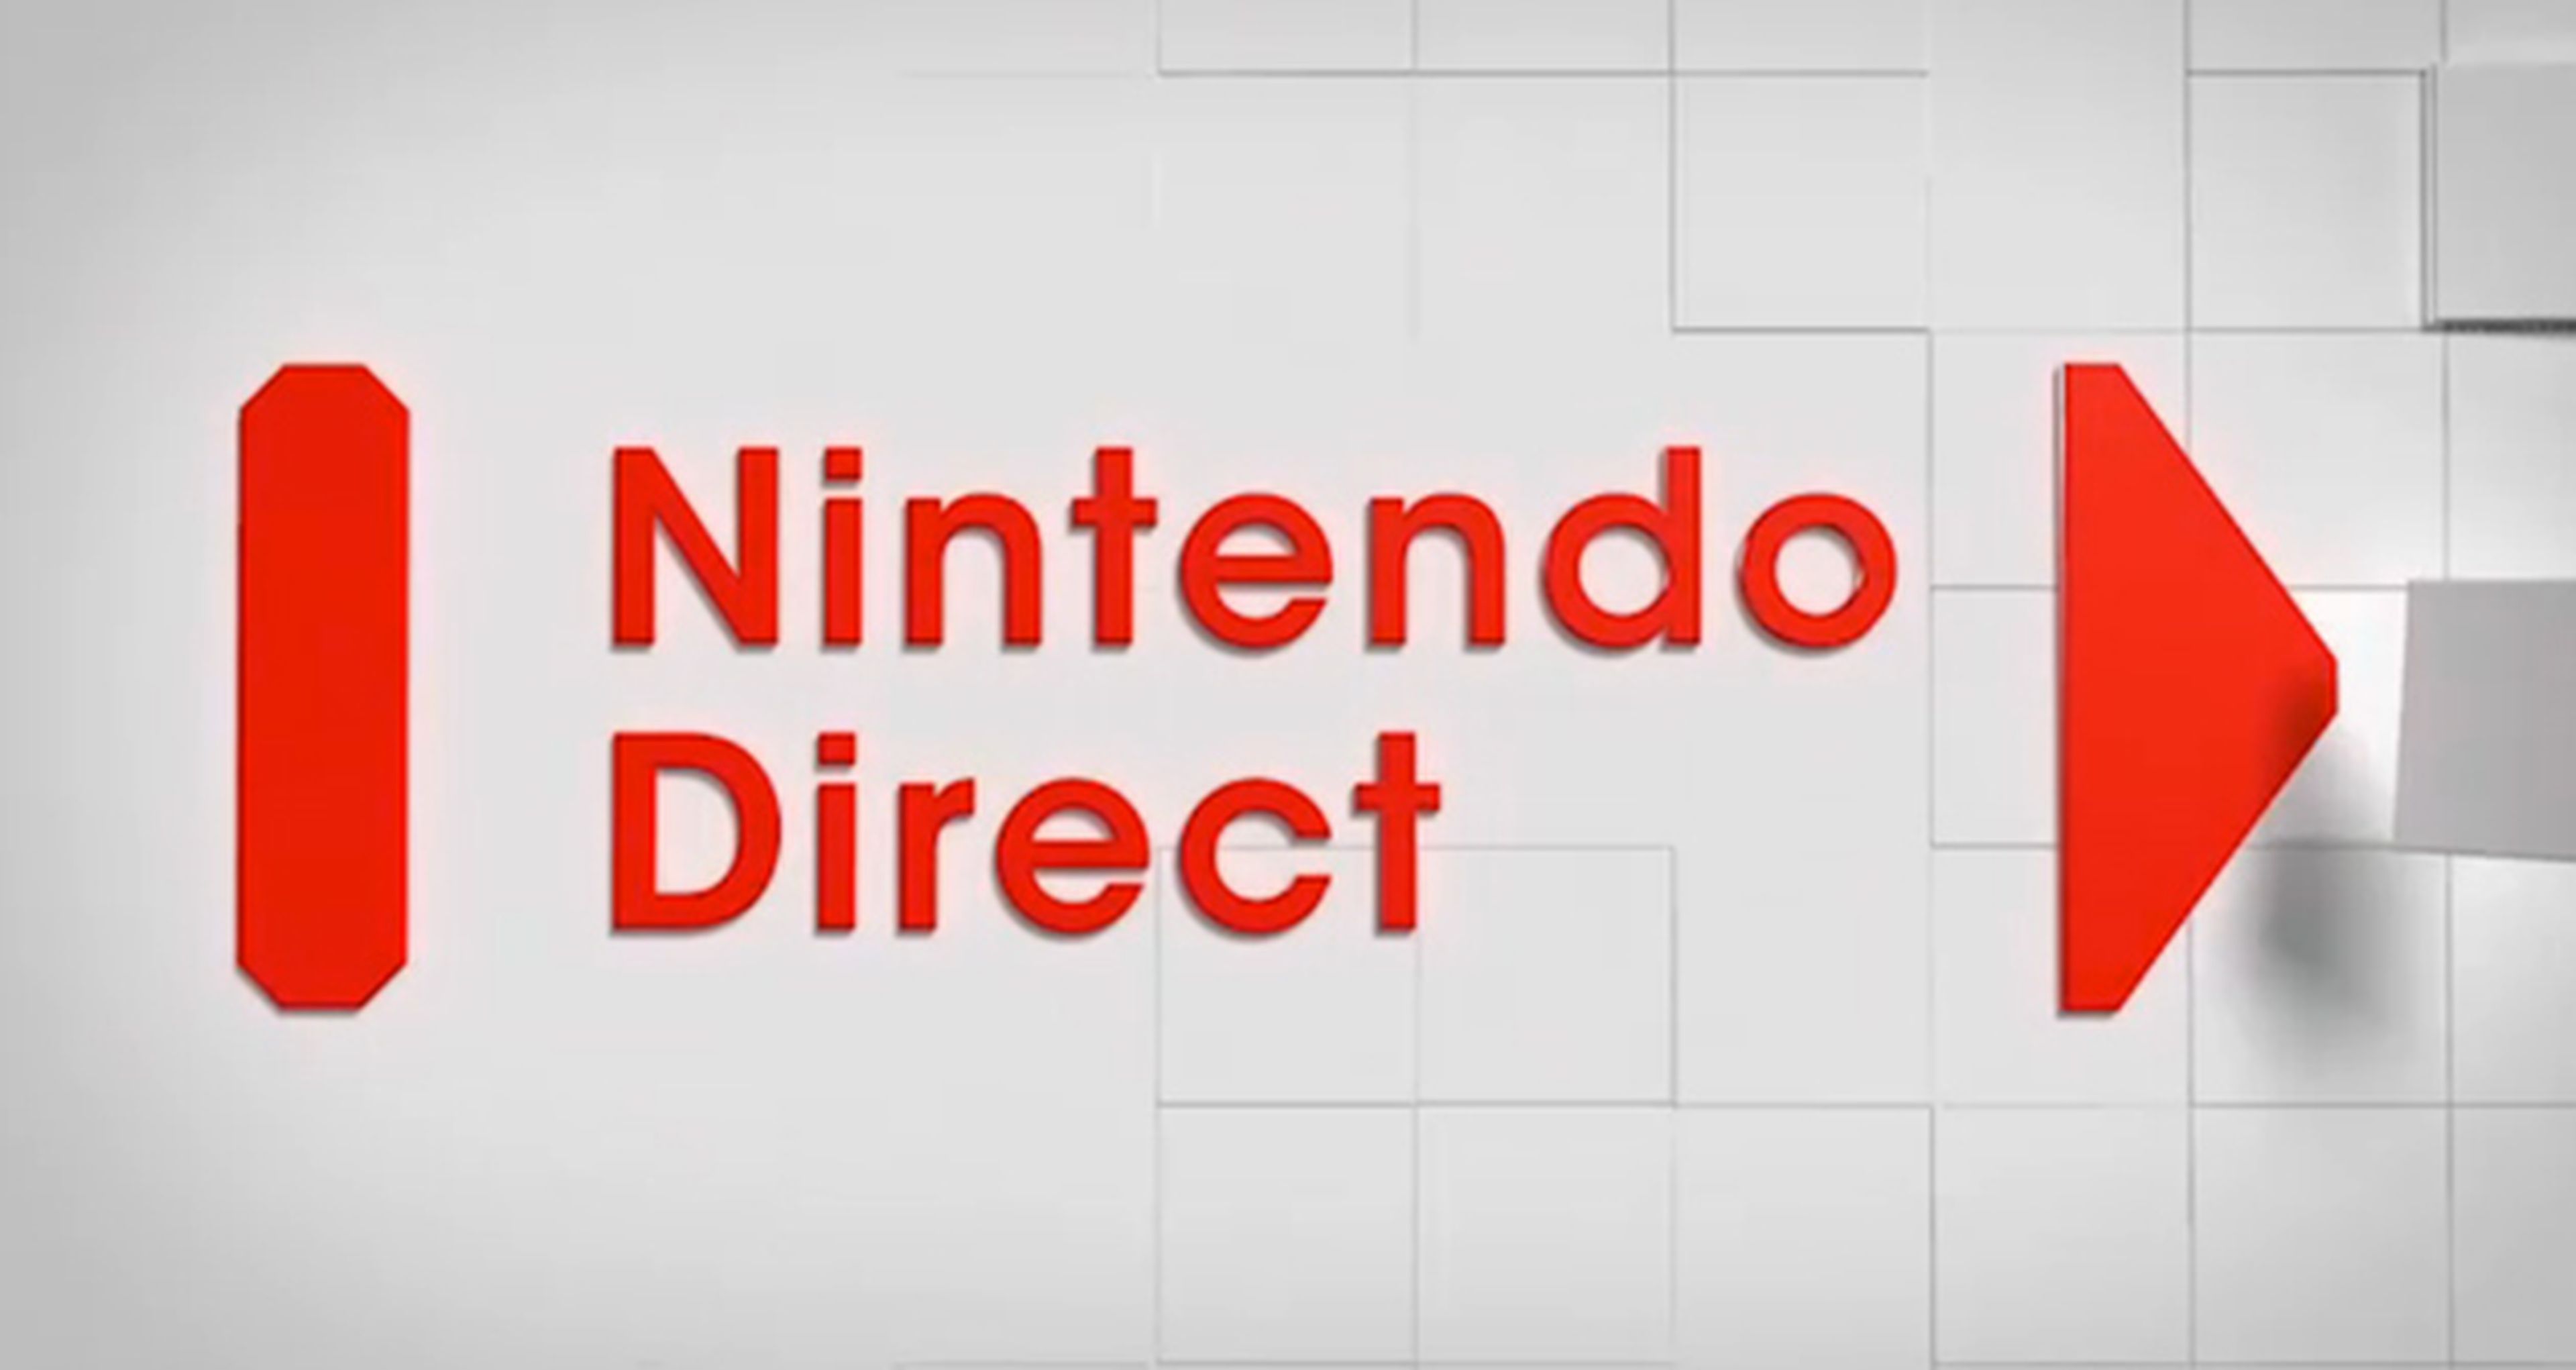 Lo más destacable del Nintendo Direct